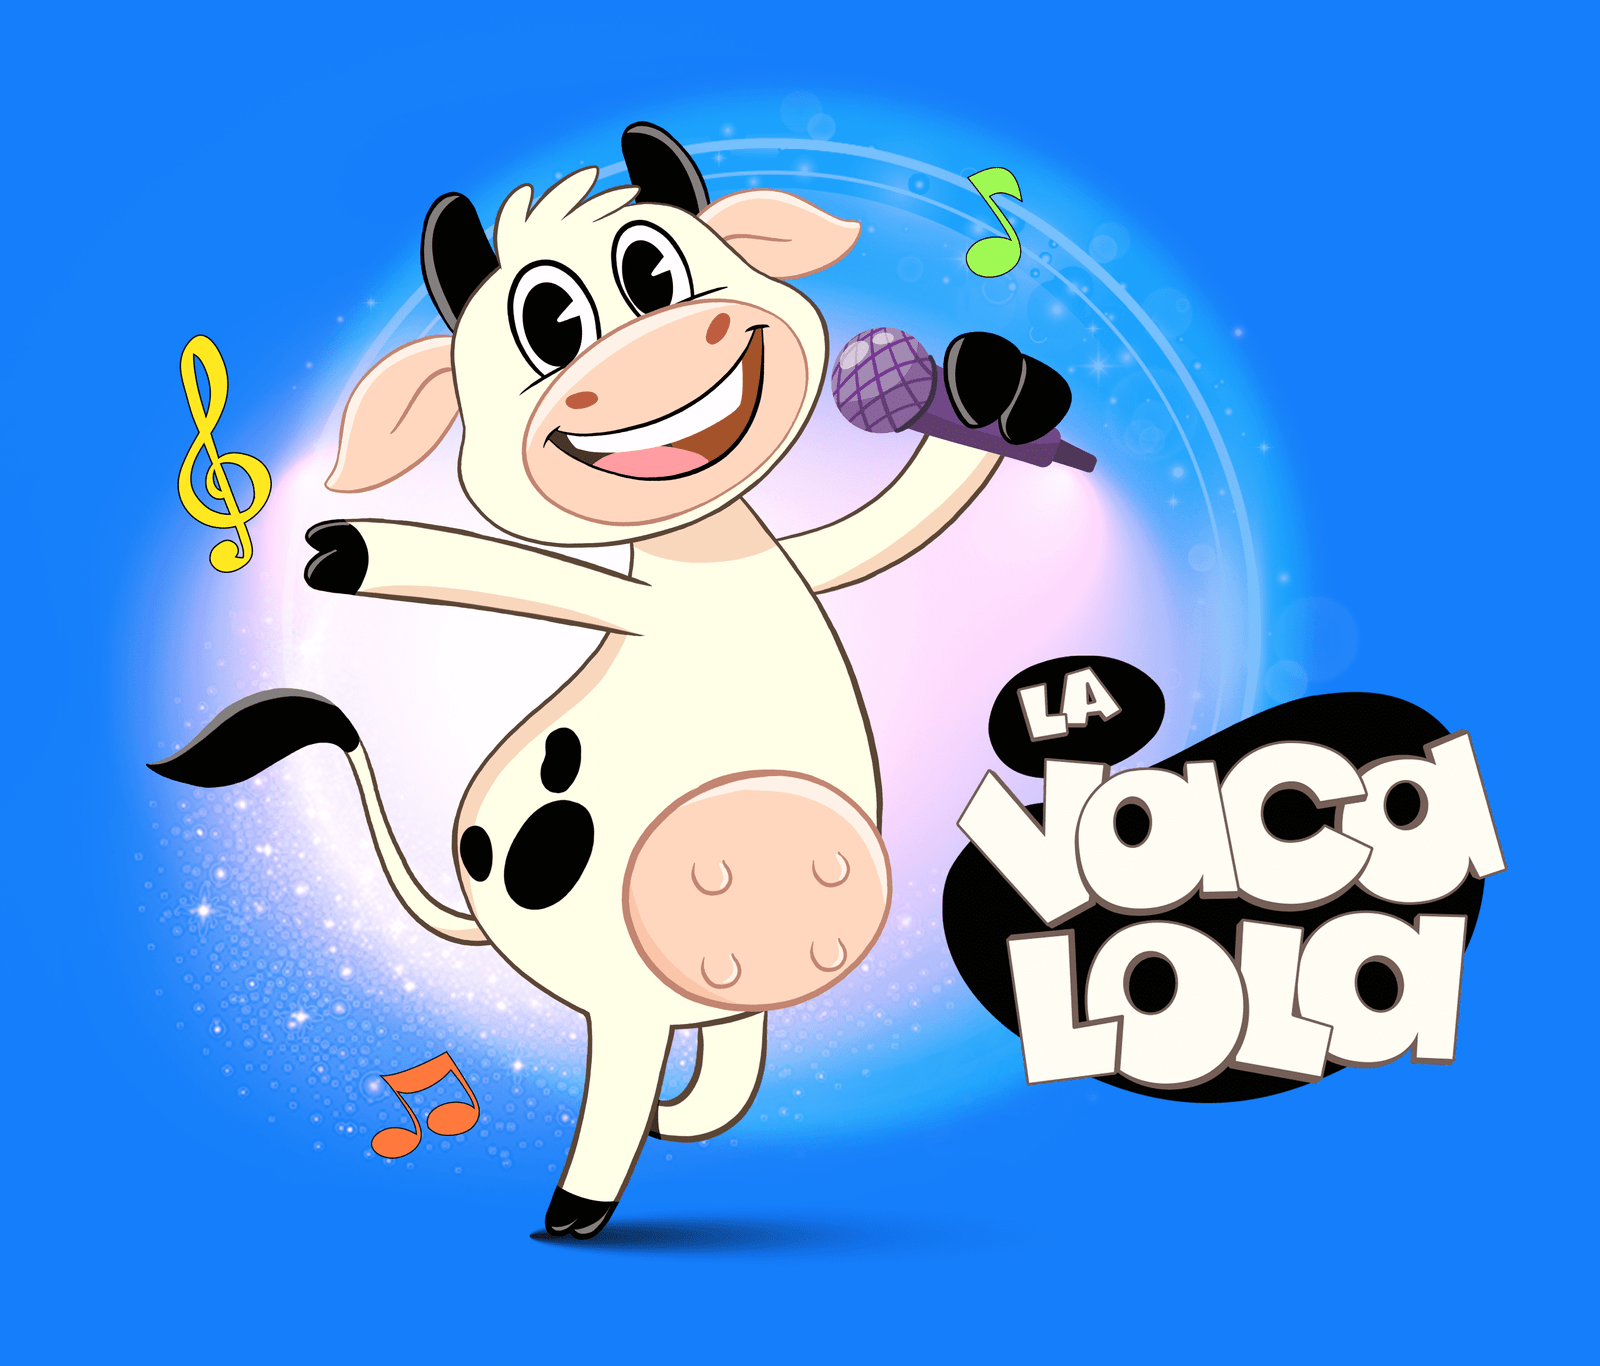 La Vaca Lola - Toy Cantando - Canciones infantiles